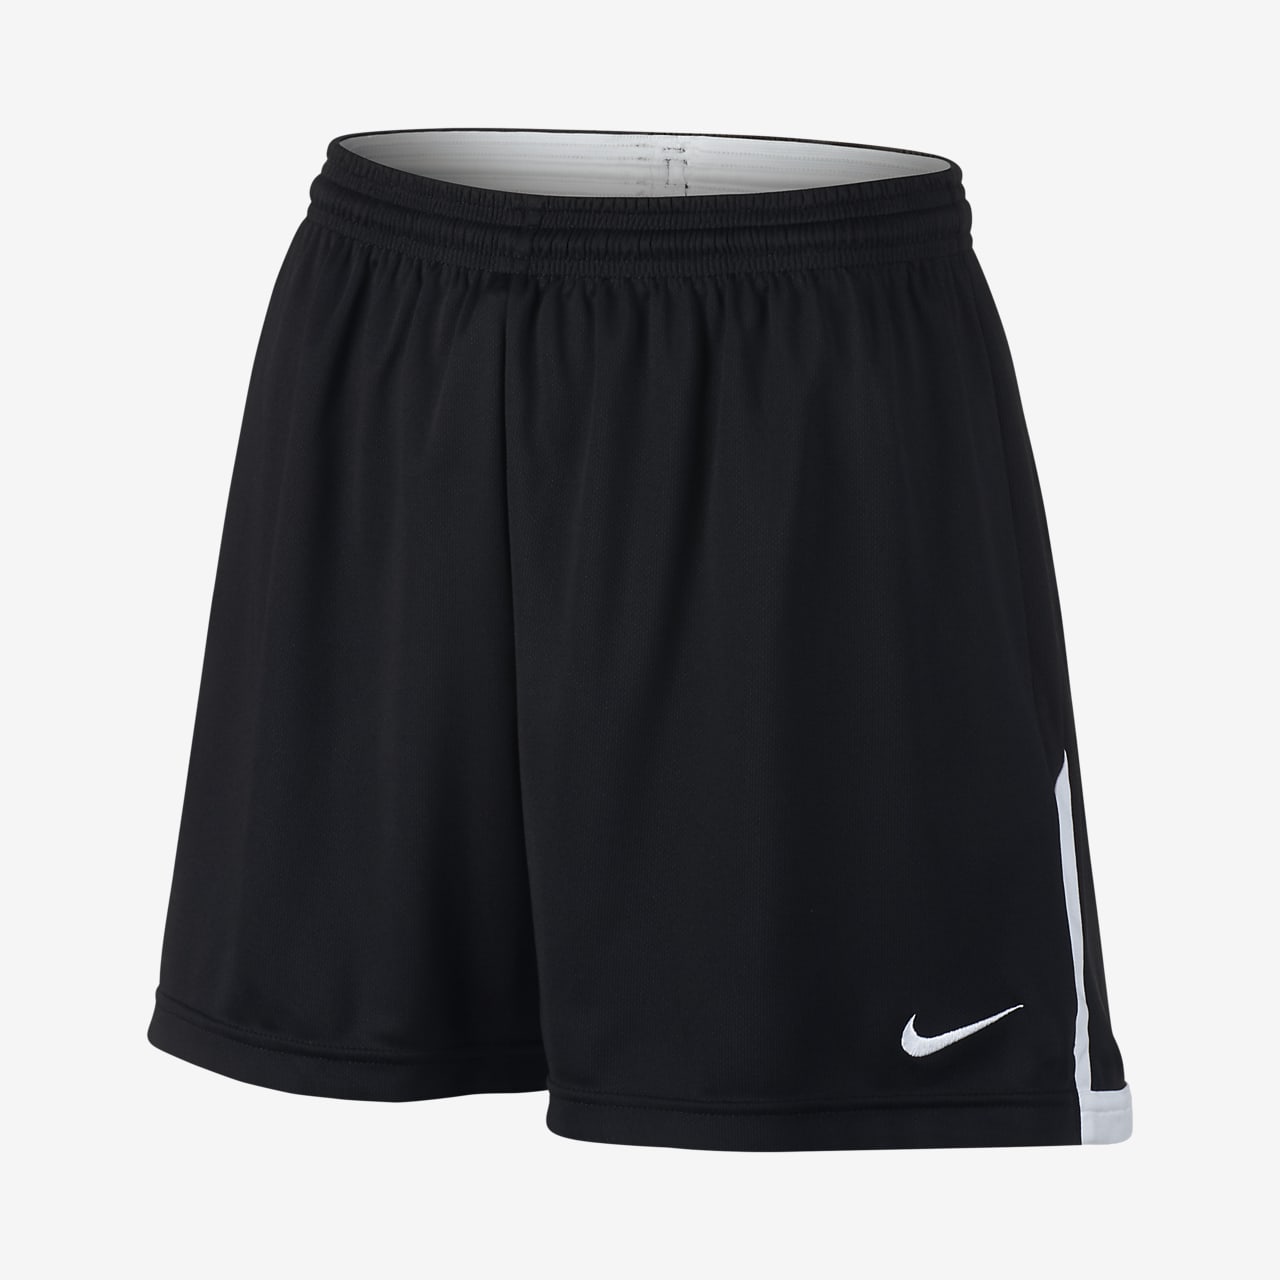 Nike Face-Off Women's Lacrosse Shorts (Stock). Nike.com